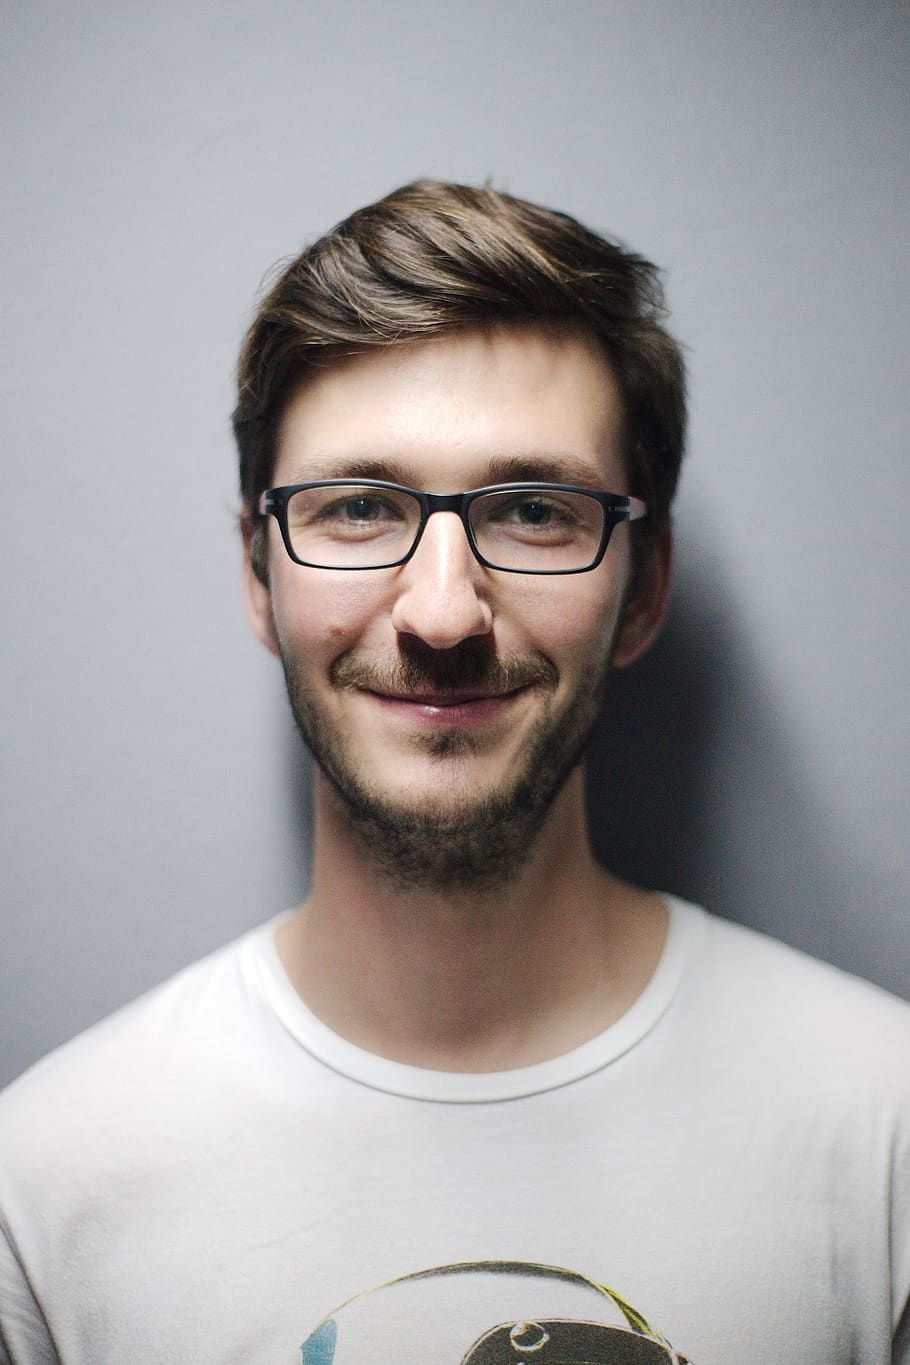 Man Smiling Behind Wall, adult, boy, casual, close-up, eyeglasses, HD wallpaper